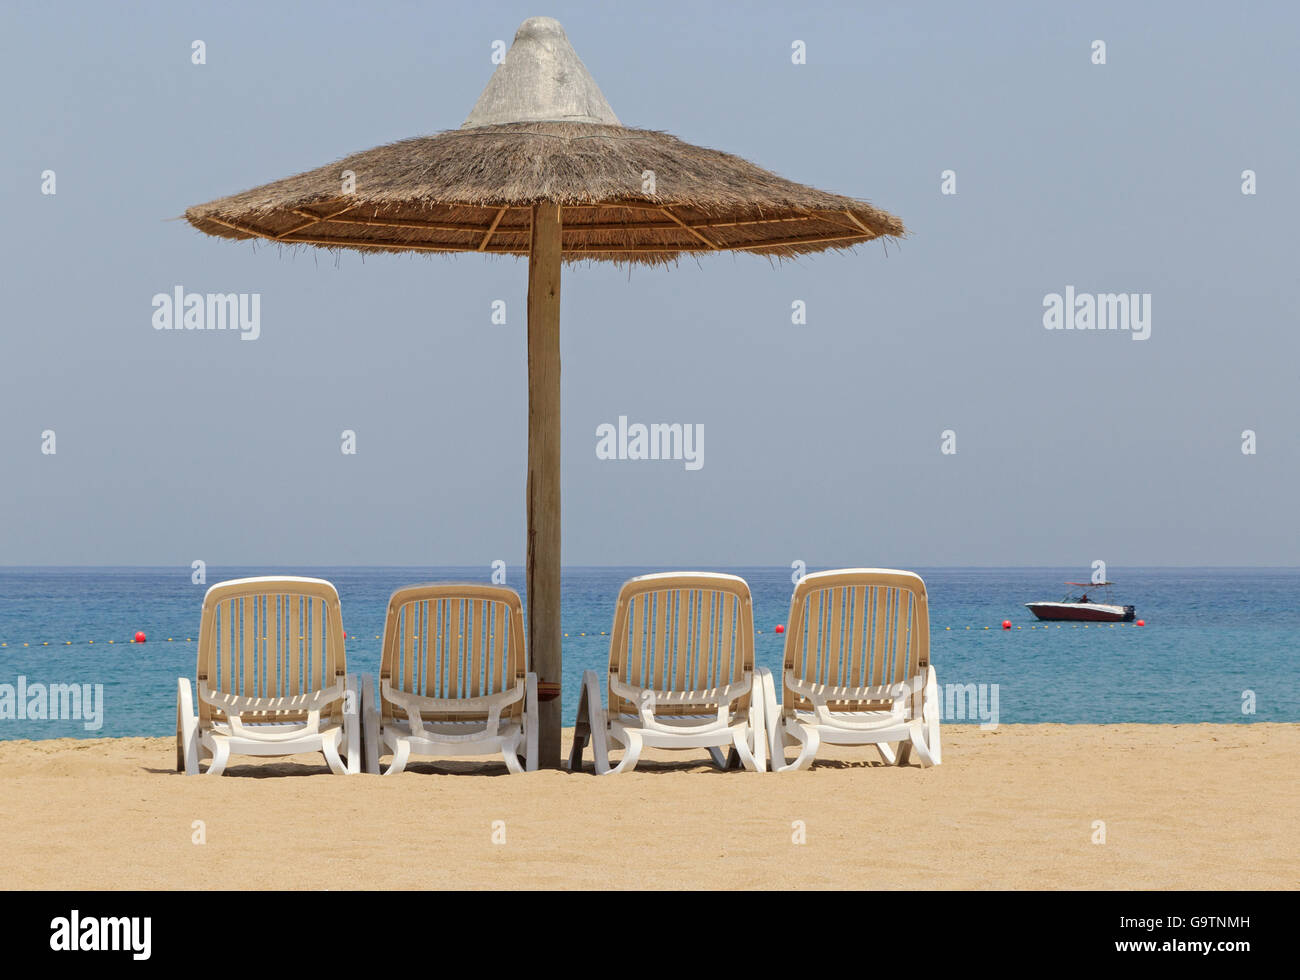 sunshade tent and chairs on beach in Fujairah, UAE Stock Photo